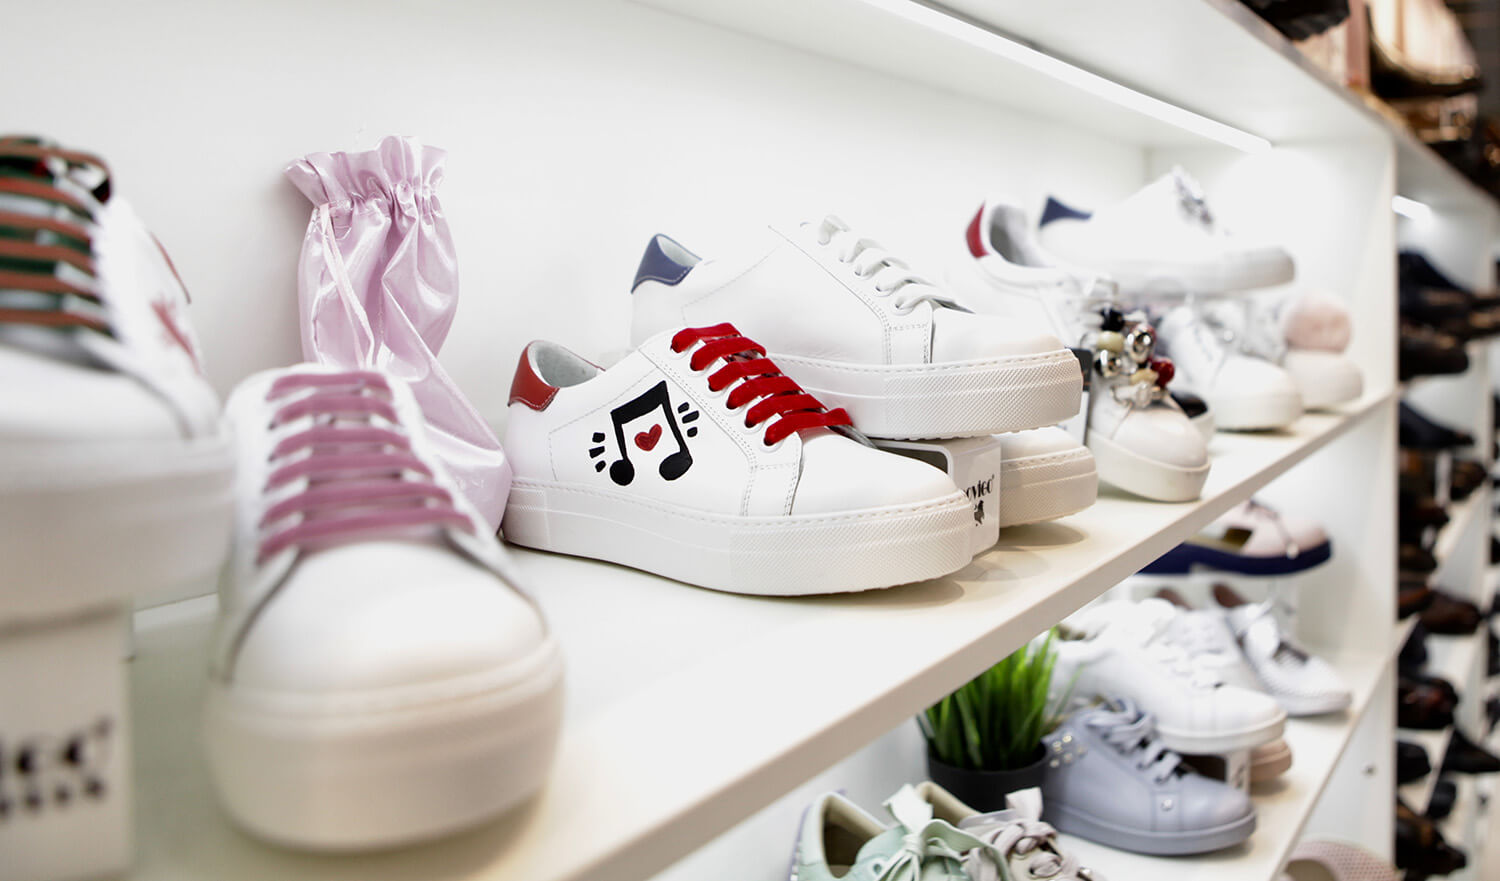 В «Крокус Экспо» начала работу межсезонная отраслевая выставка Mos Shoes 2019. В числе экспертов, работающих на выставке, - представители АНО «СОЮЗЭКСПЕРТИЗА» ТПП РФ